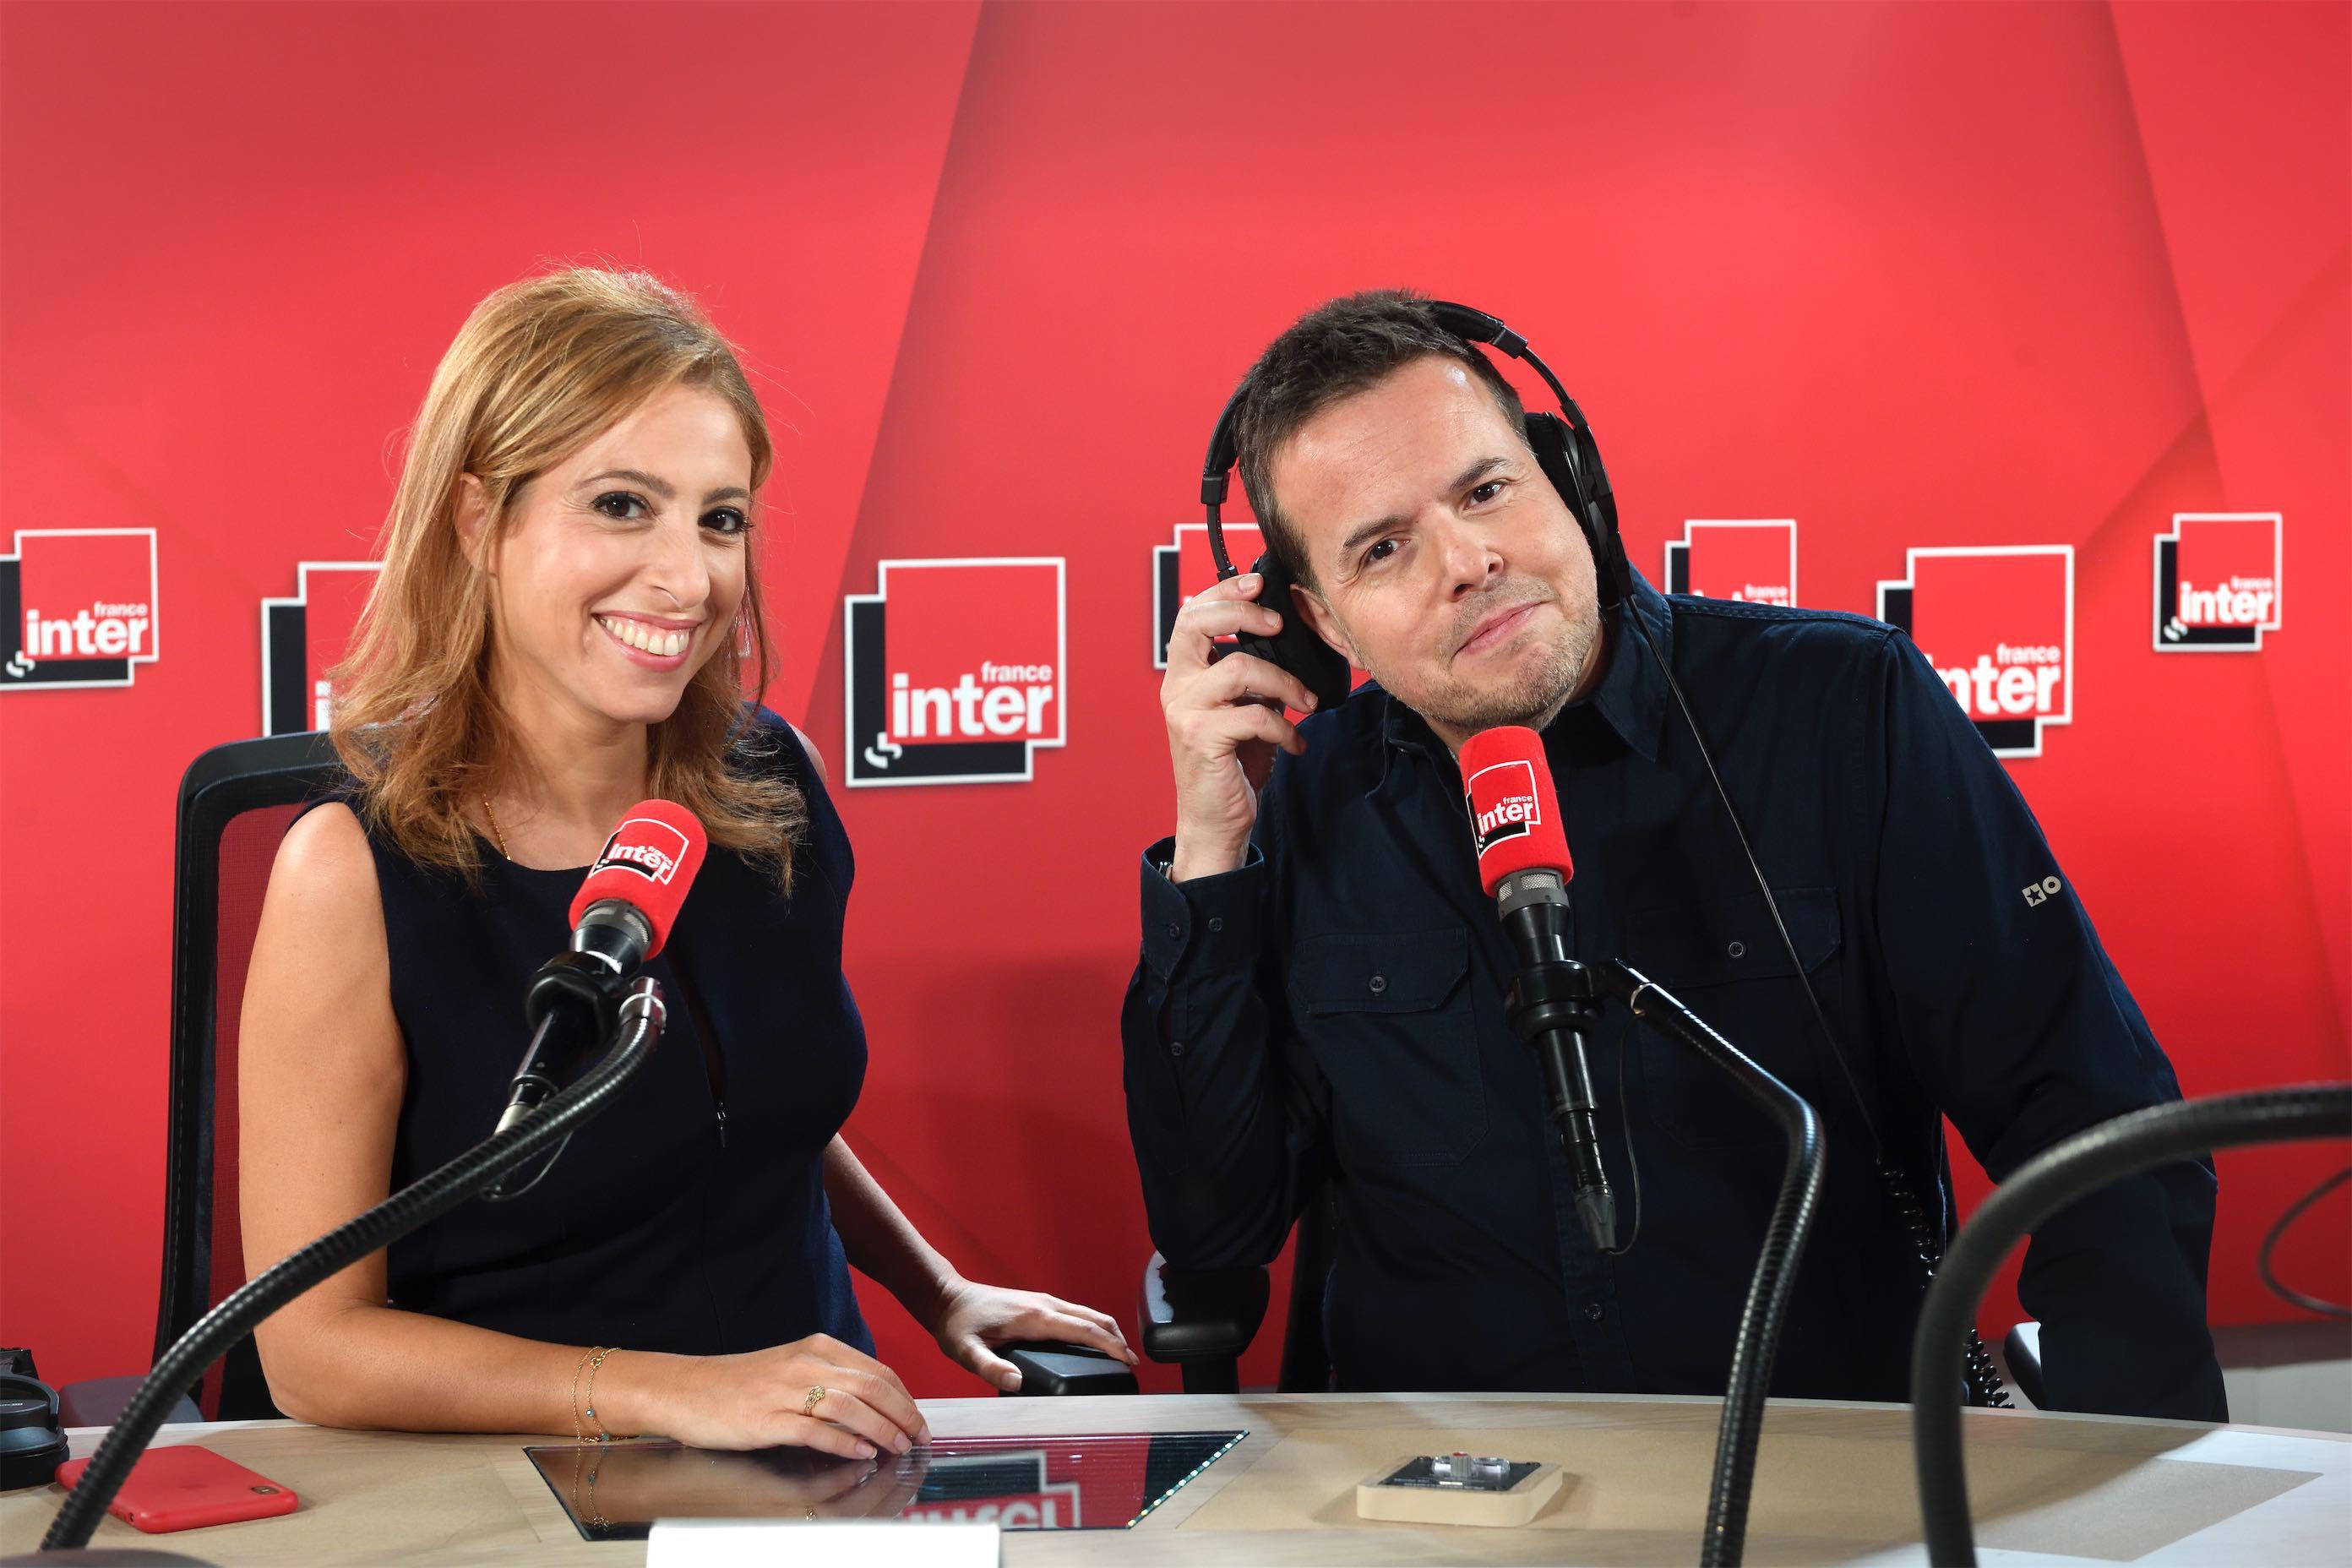 Après de vives rumeurs de départ, Léa Salamé a annoncé qu’elle souhaitait rester en quotidienne sur France Inter. Christophe Abramowitz